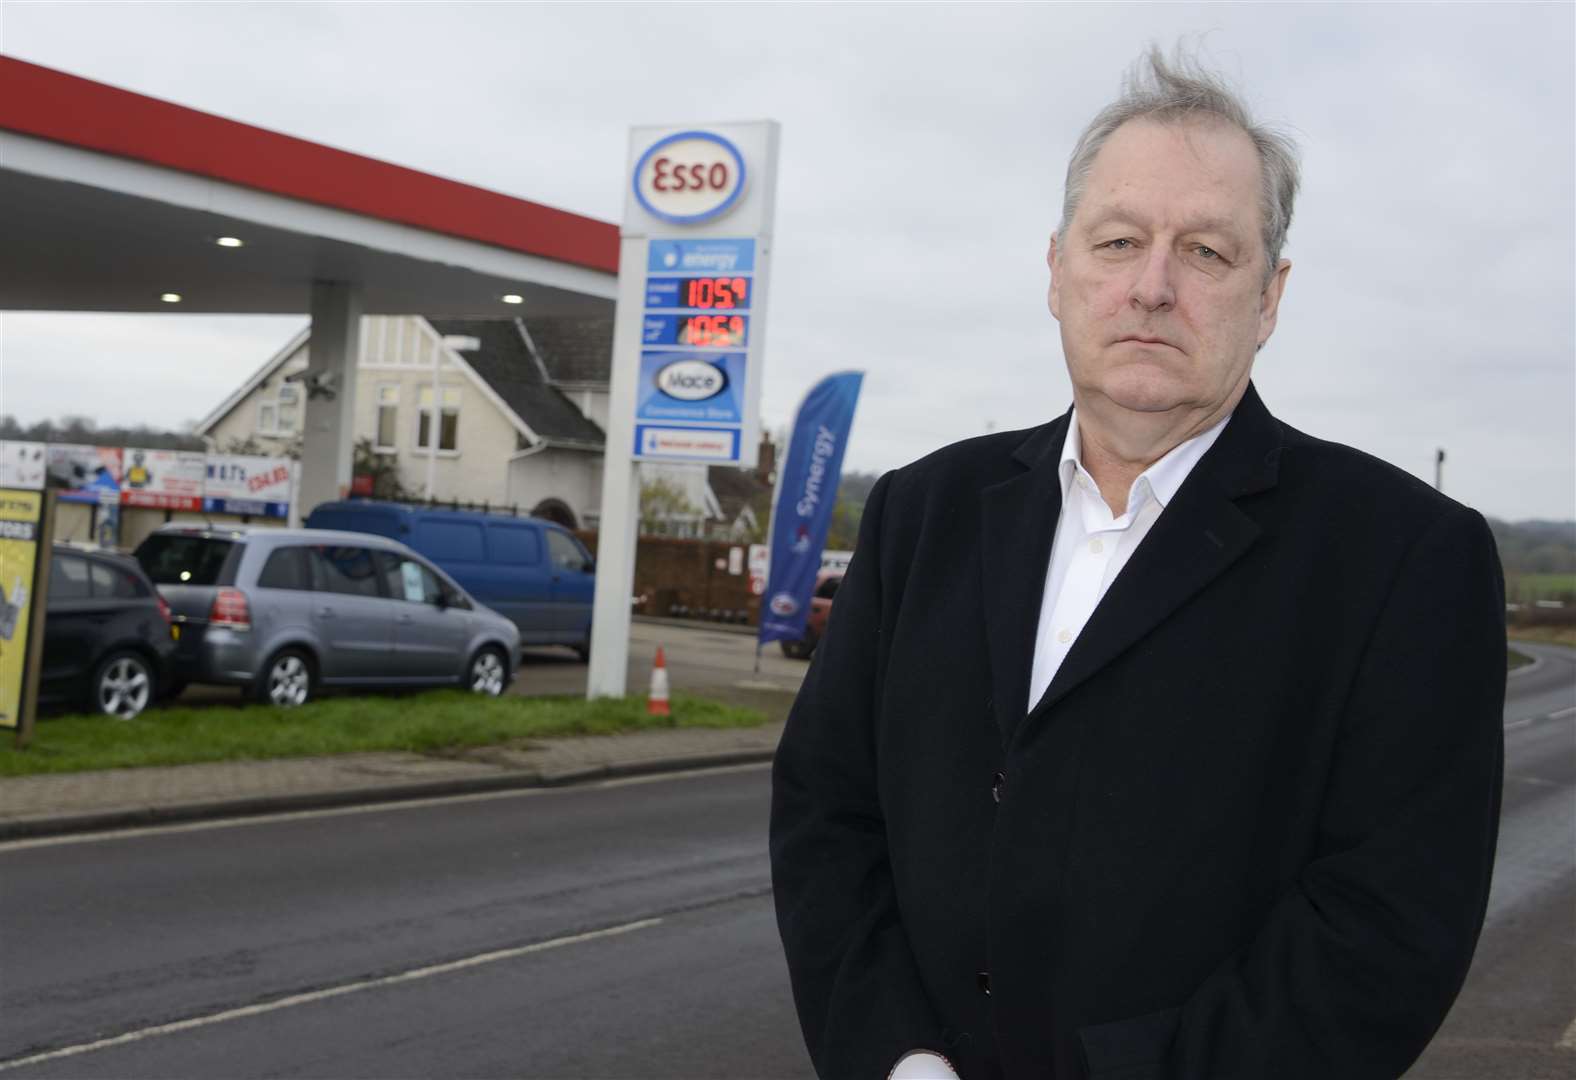 Howard Cox, Fair Fuel campaigner